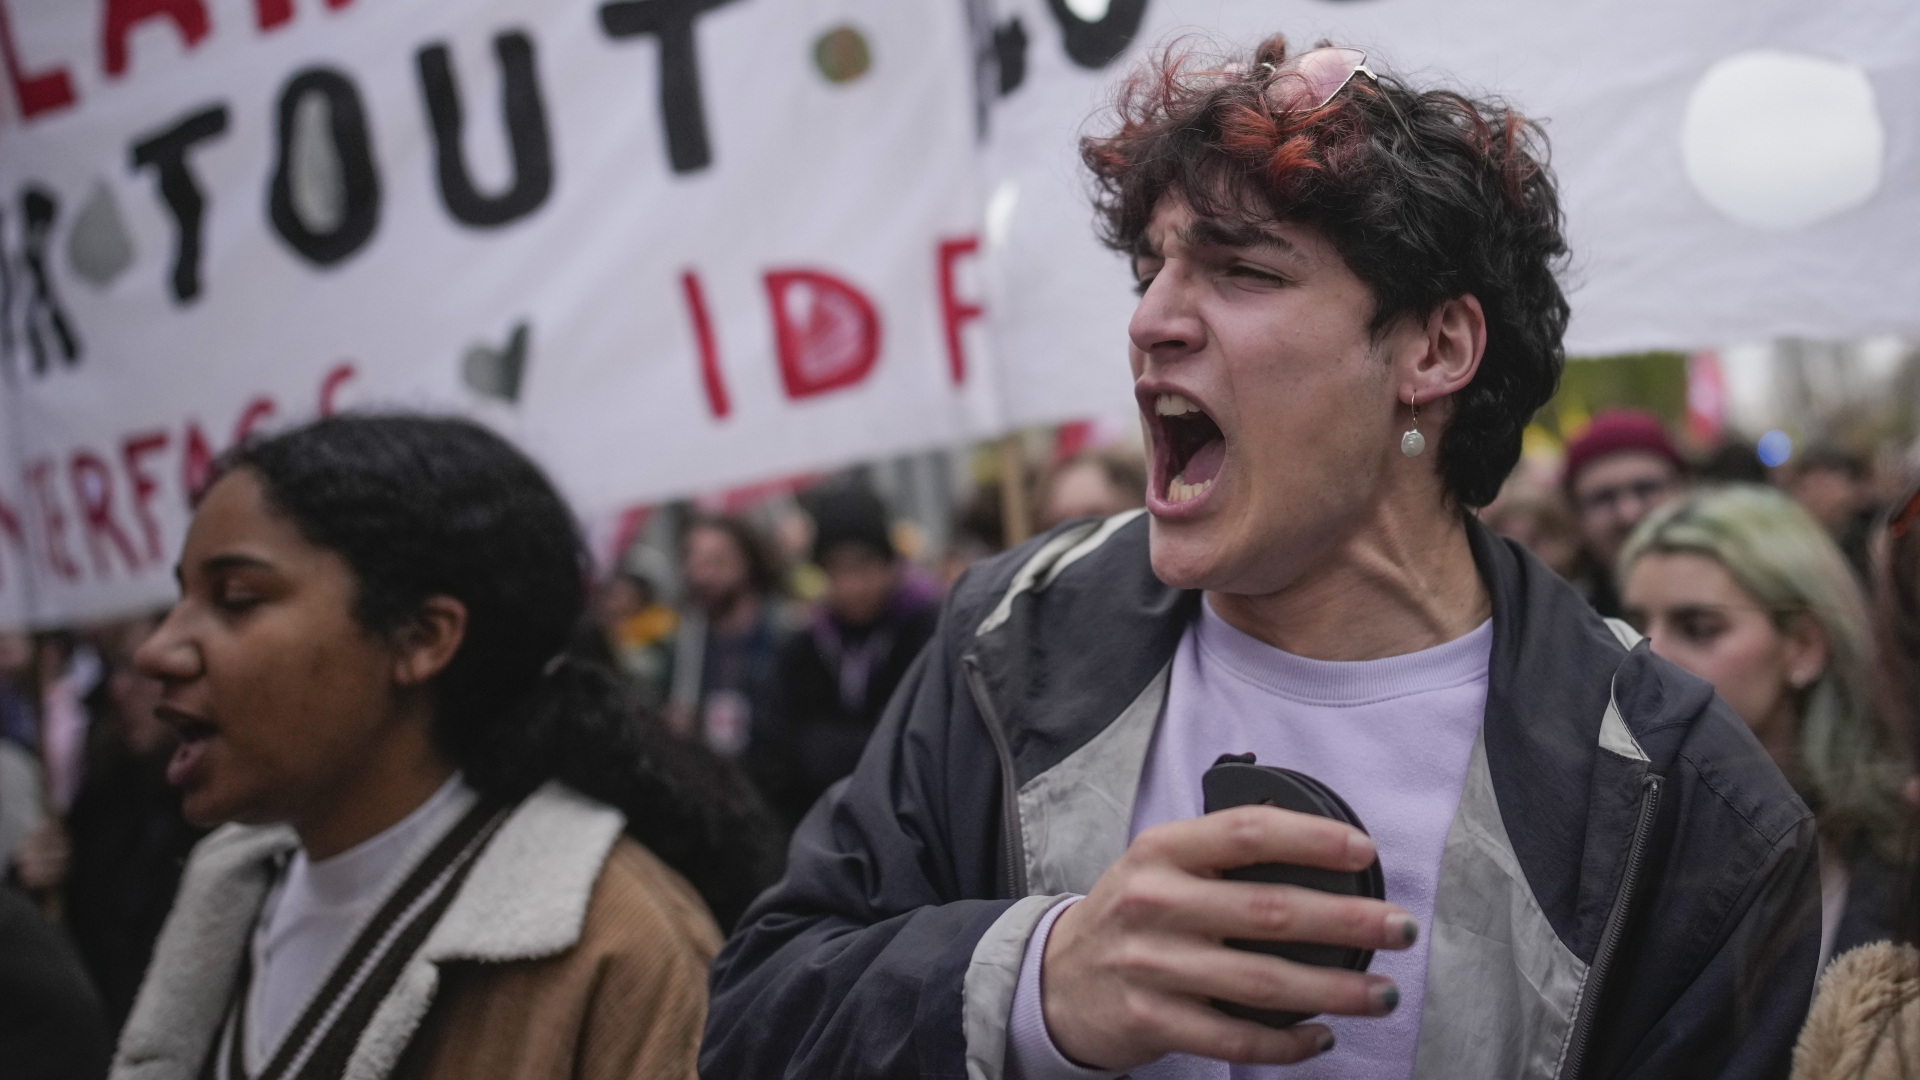 Eine junge Frau und ein junger Mann rufen Parolen auf einer Demonstration in Paris. | dpa